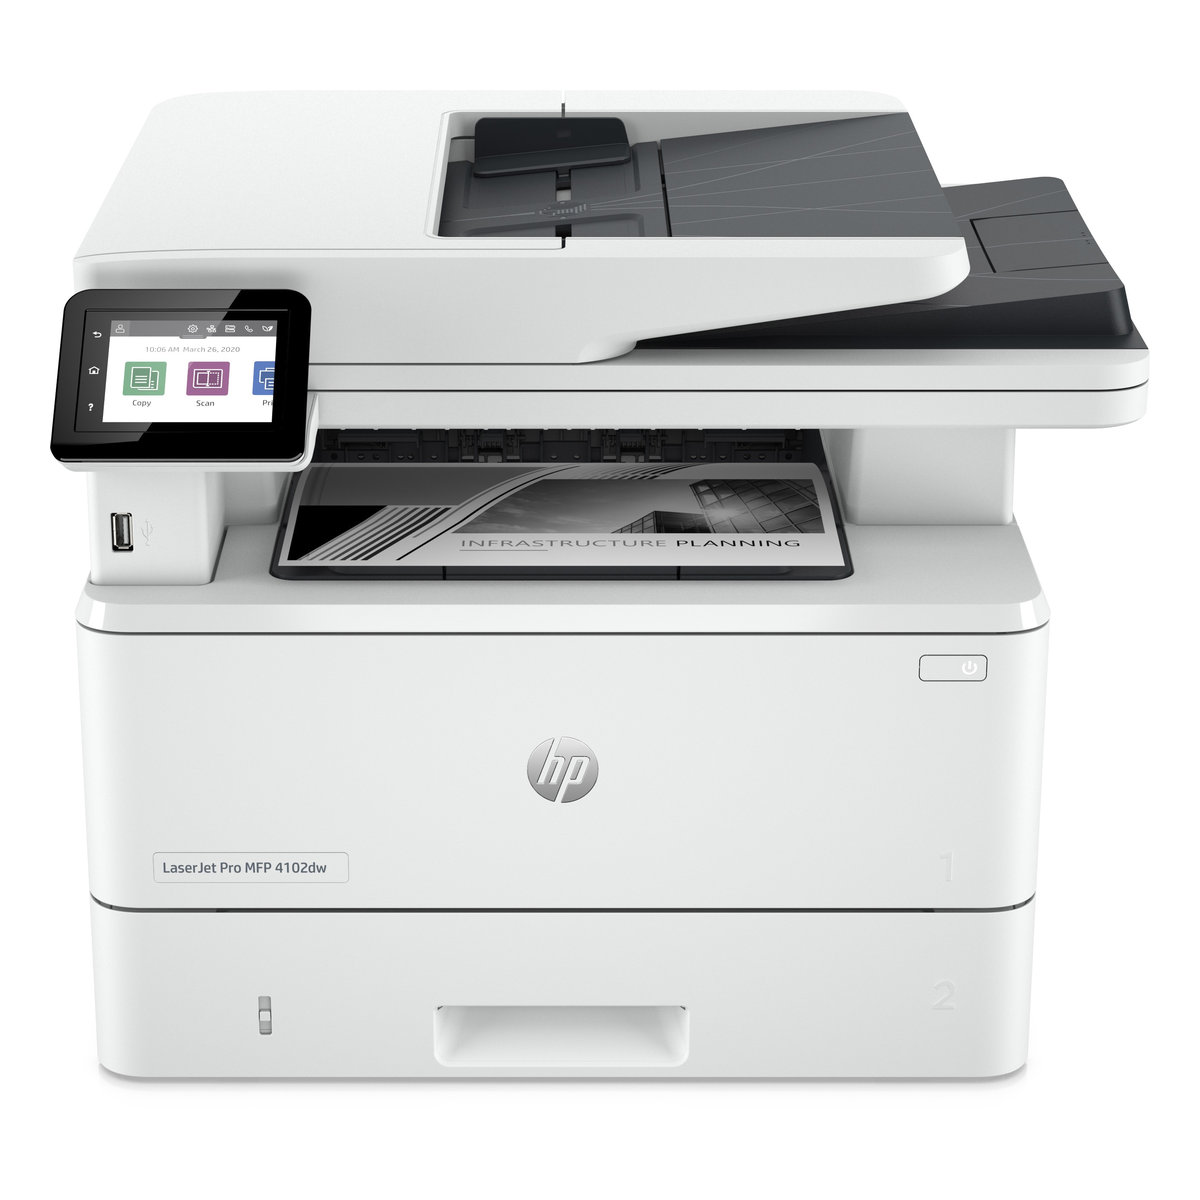 Náplně do tiskárny HP LaserJet Pro MFP 4102dw